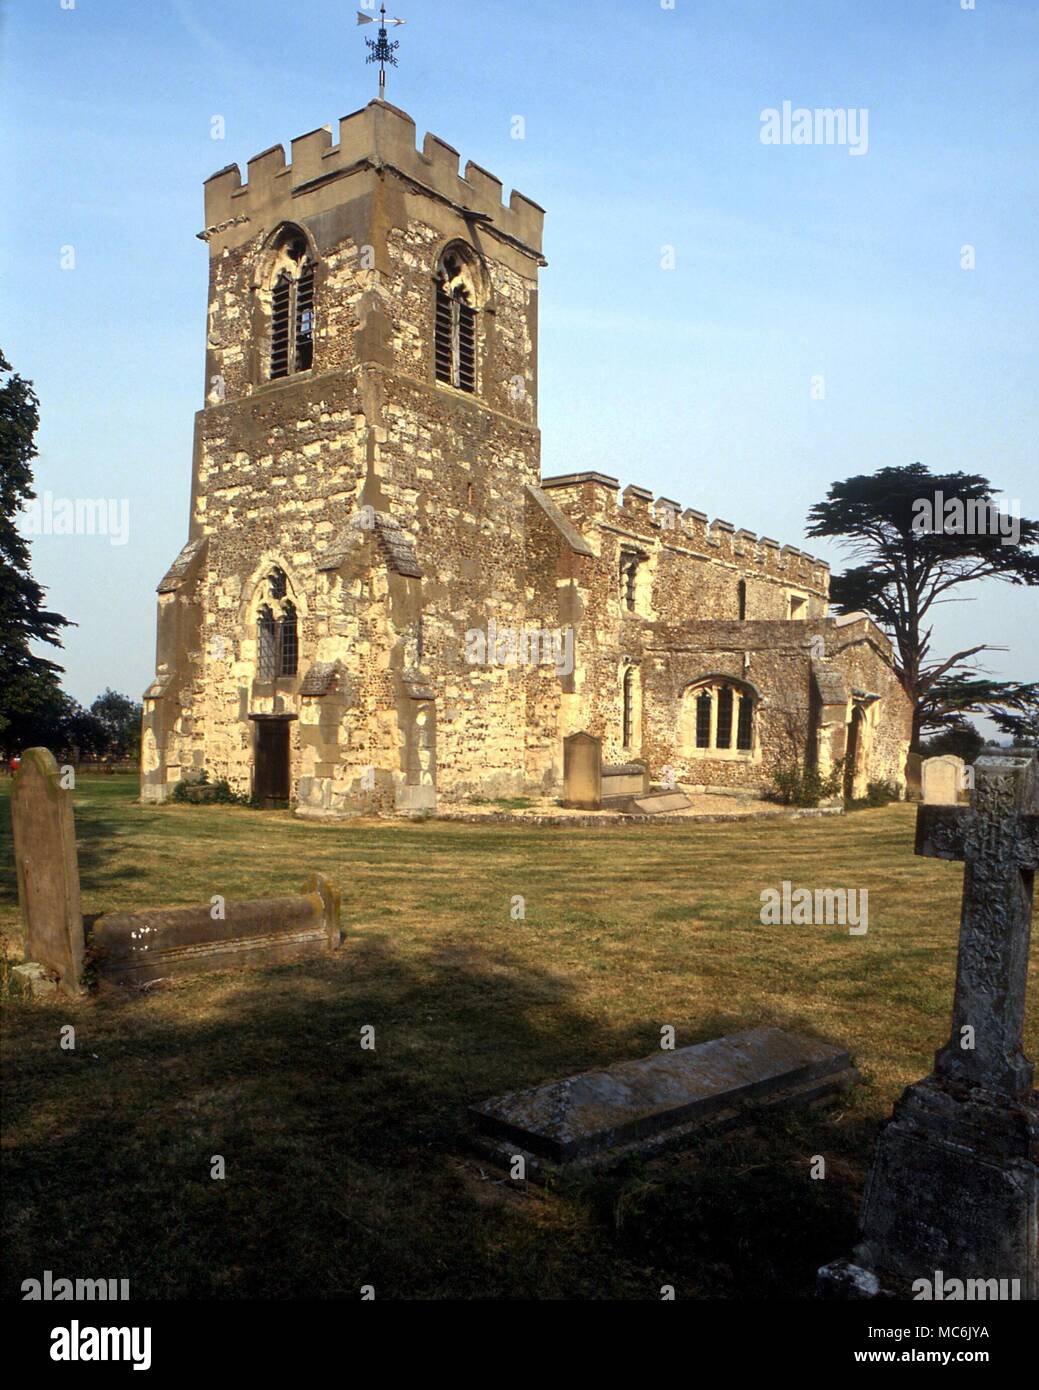 La sorcellerie - Hinxworth église paroissiale, où la tombe familiale de l'infâme sorcière du 16ème siècle et de beauté, Jane Shore, est situé dans la nef chœur (laiton) Banque D'Images